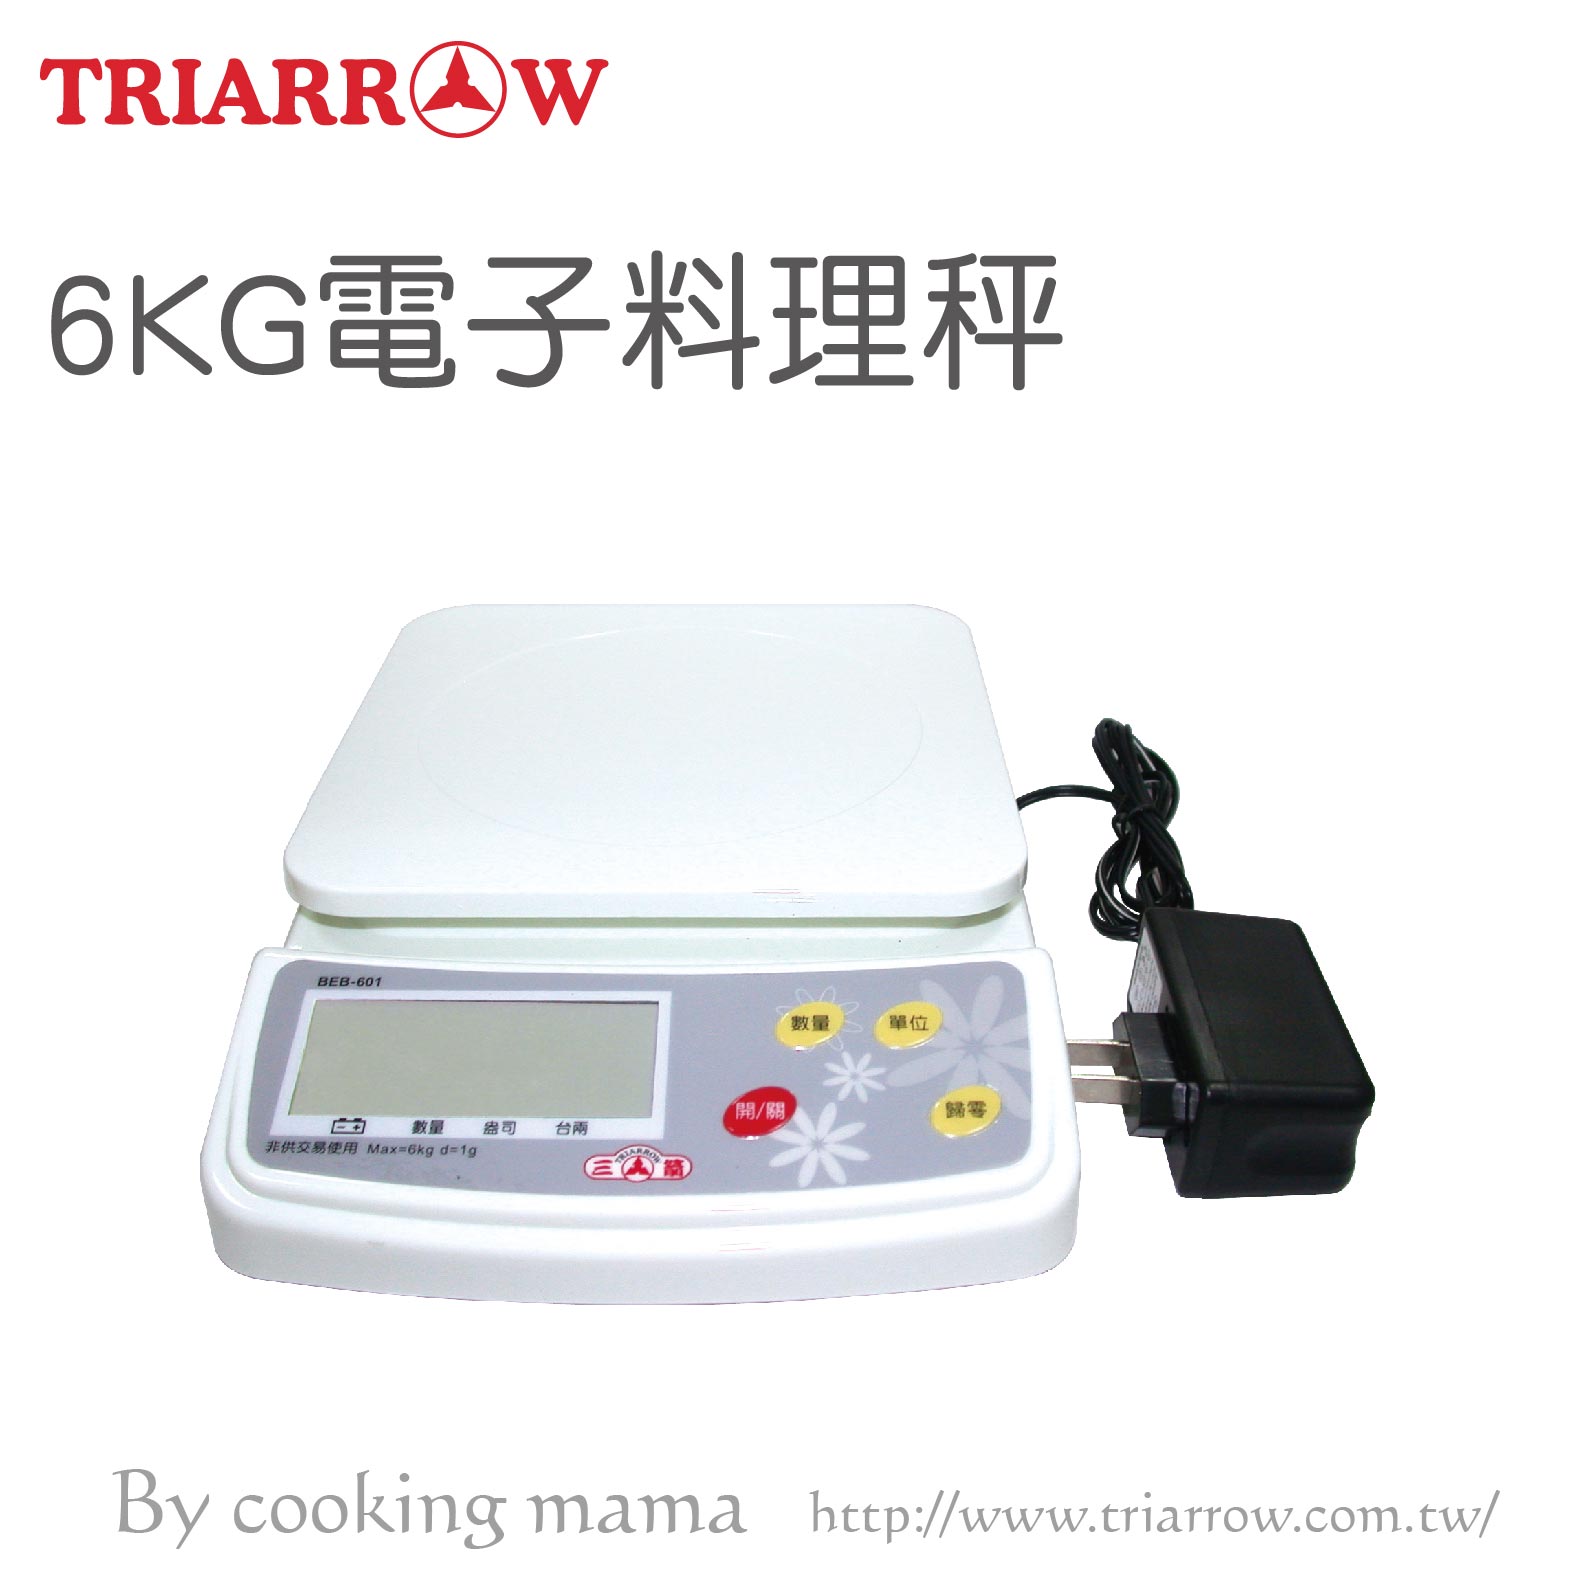 三箭牌-6KG電子料理秤(BEB-605)食品秤 烘焙秤 計量器具 充電式(伊凡卡百貨)